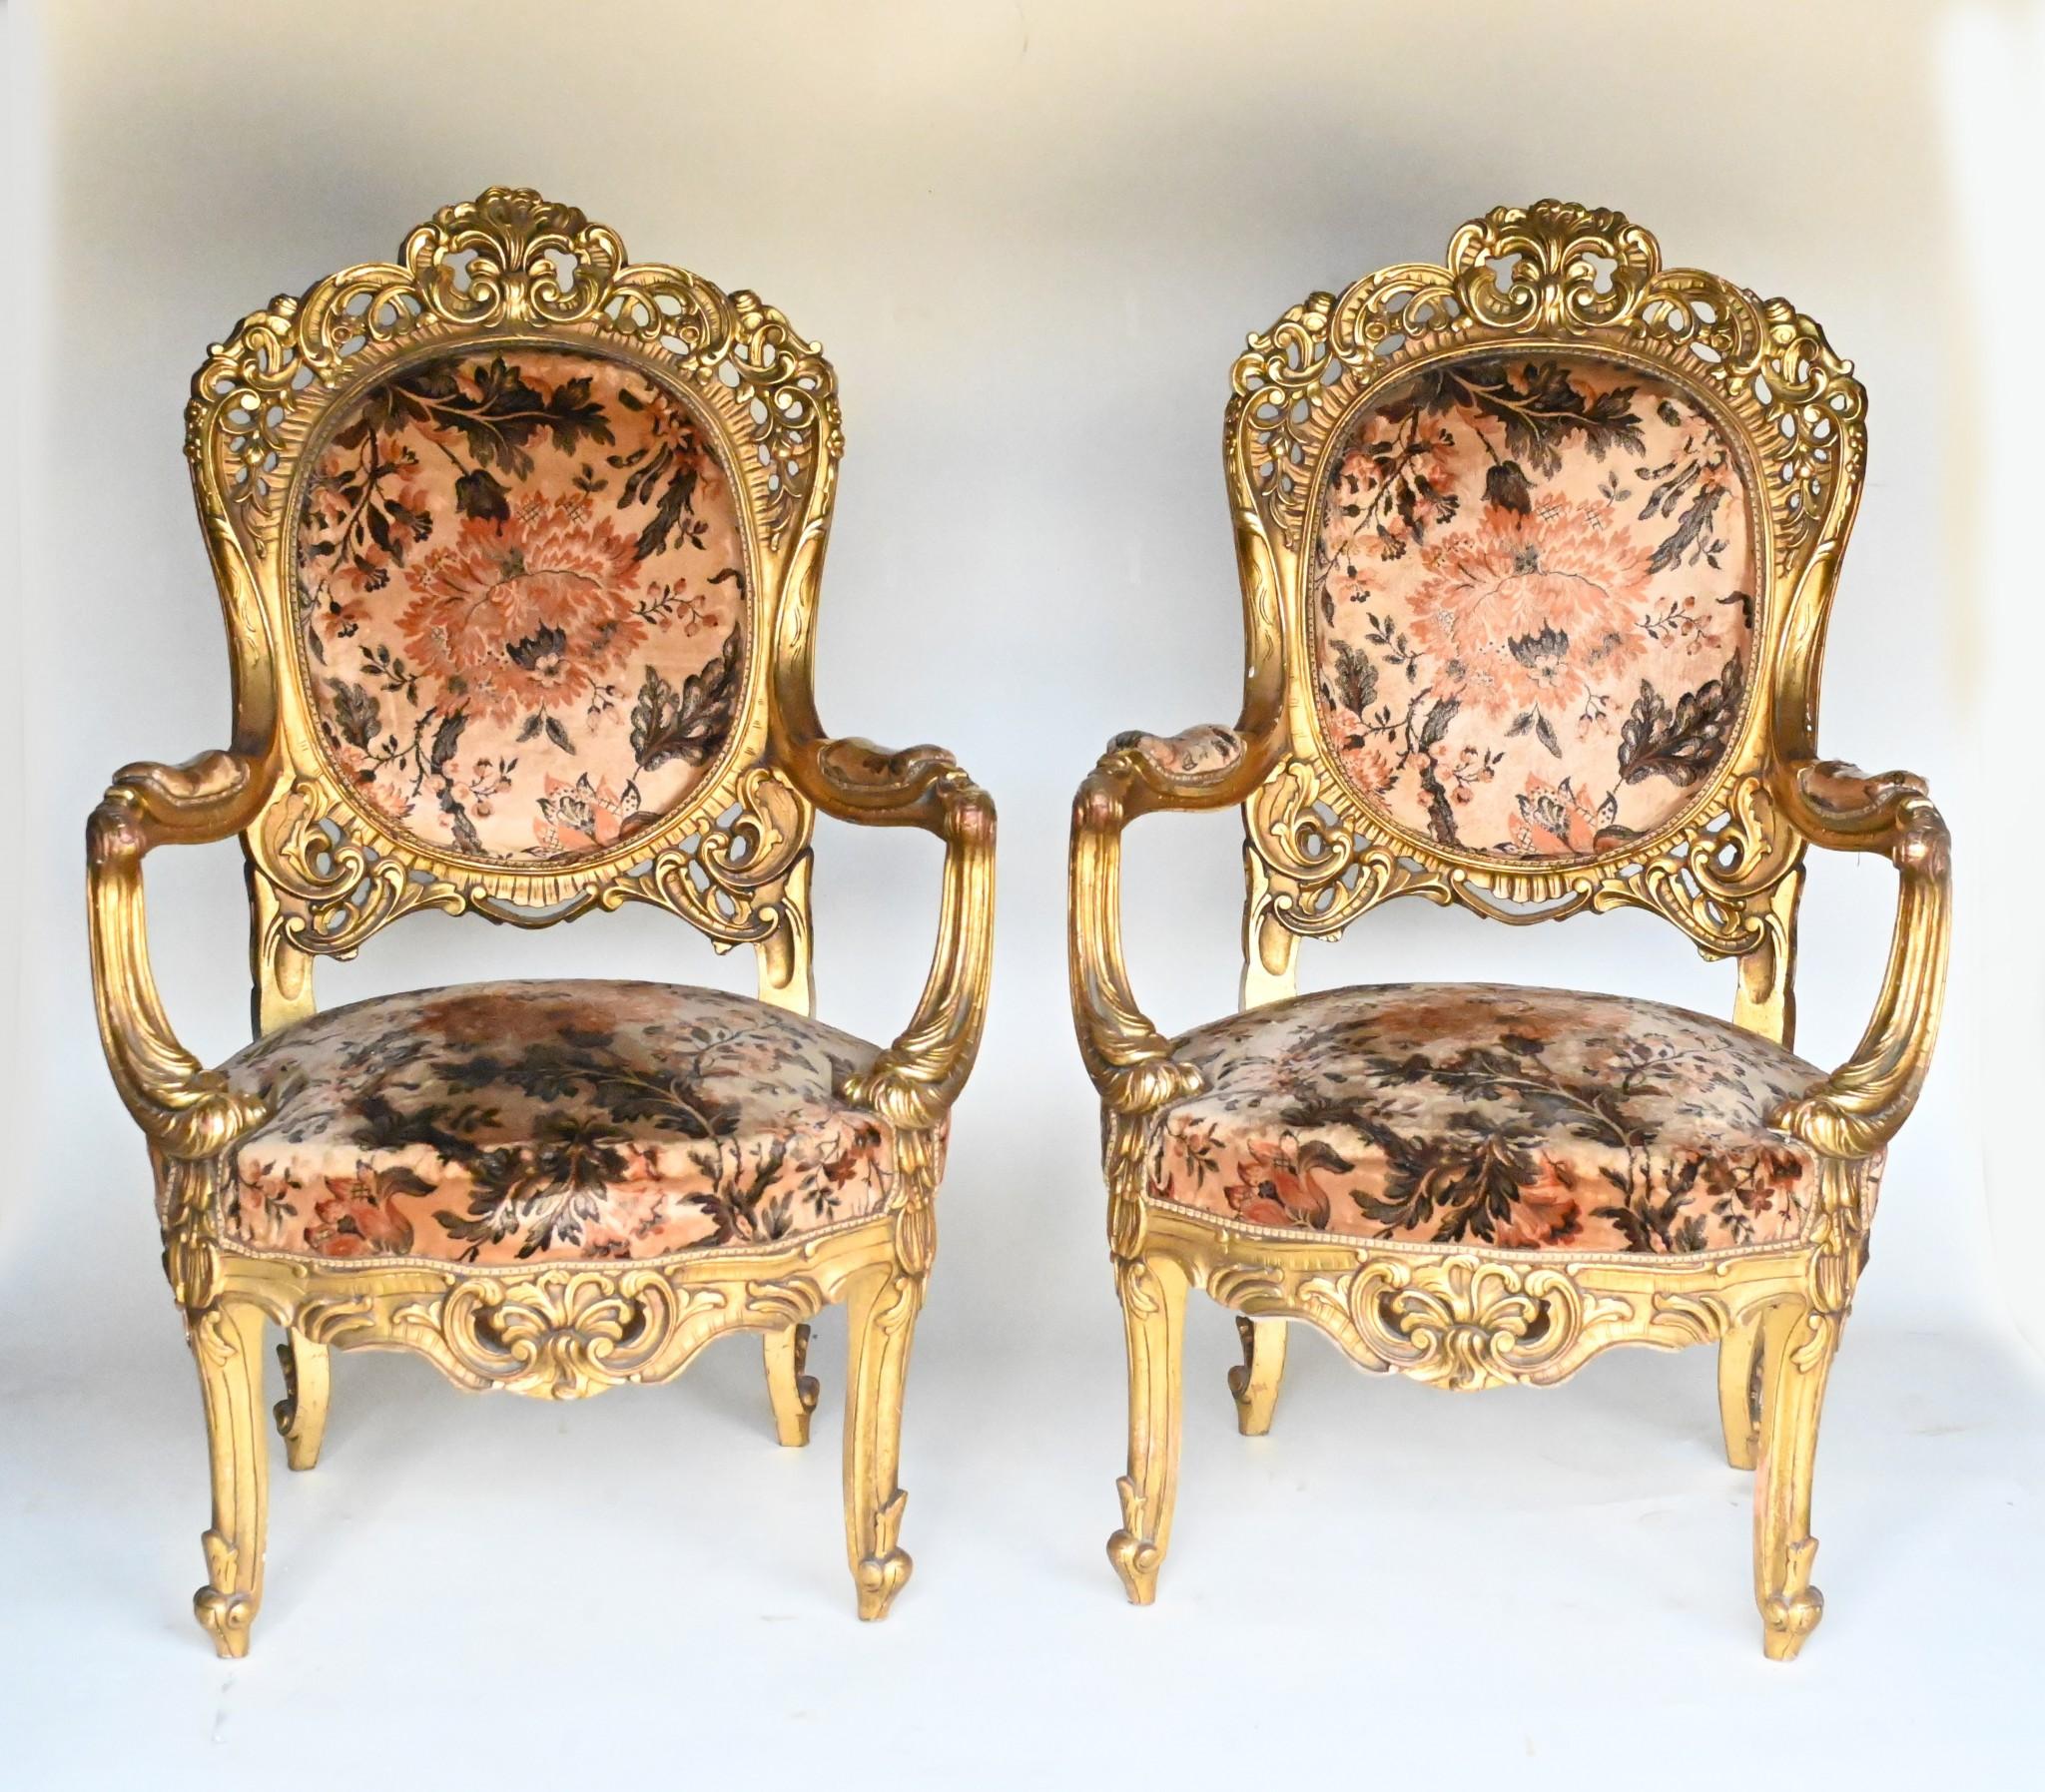 Paire de fauteuils à accoudoirs en bois doré de style français
Chaises de salon parfaites et dans le style art nouveau avec des motifs floraux et un style fluide à l'esthétique.
Très confortable grâce à ses larges accoudoirs et à ses sièges et